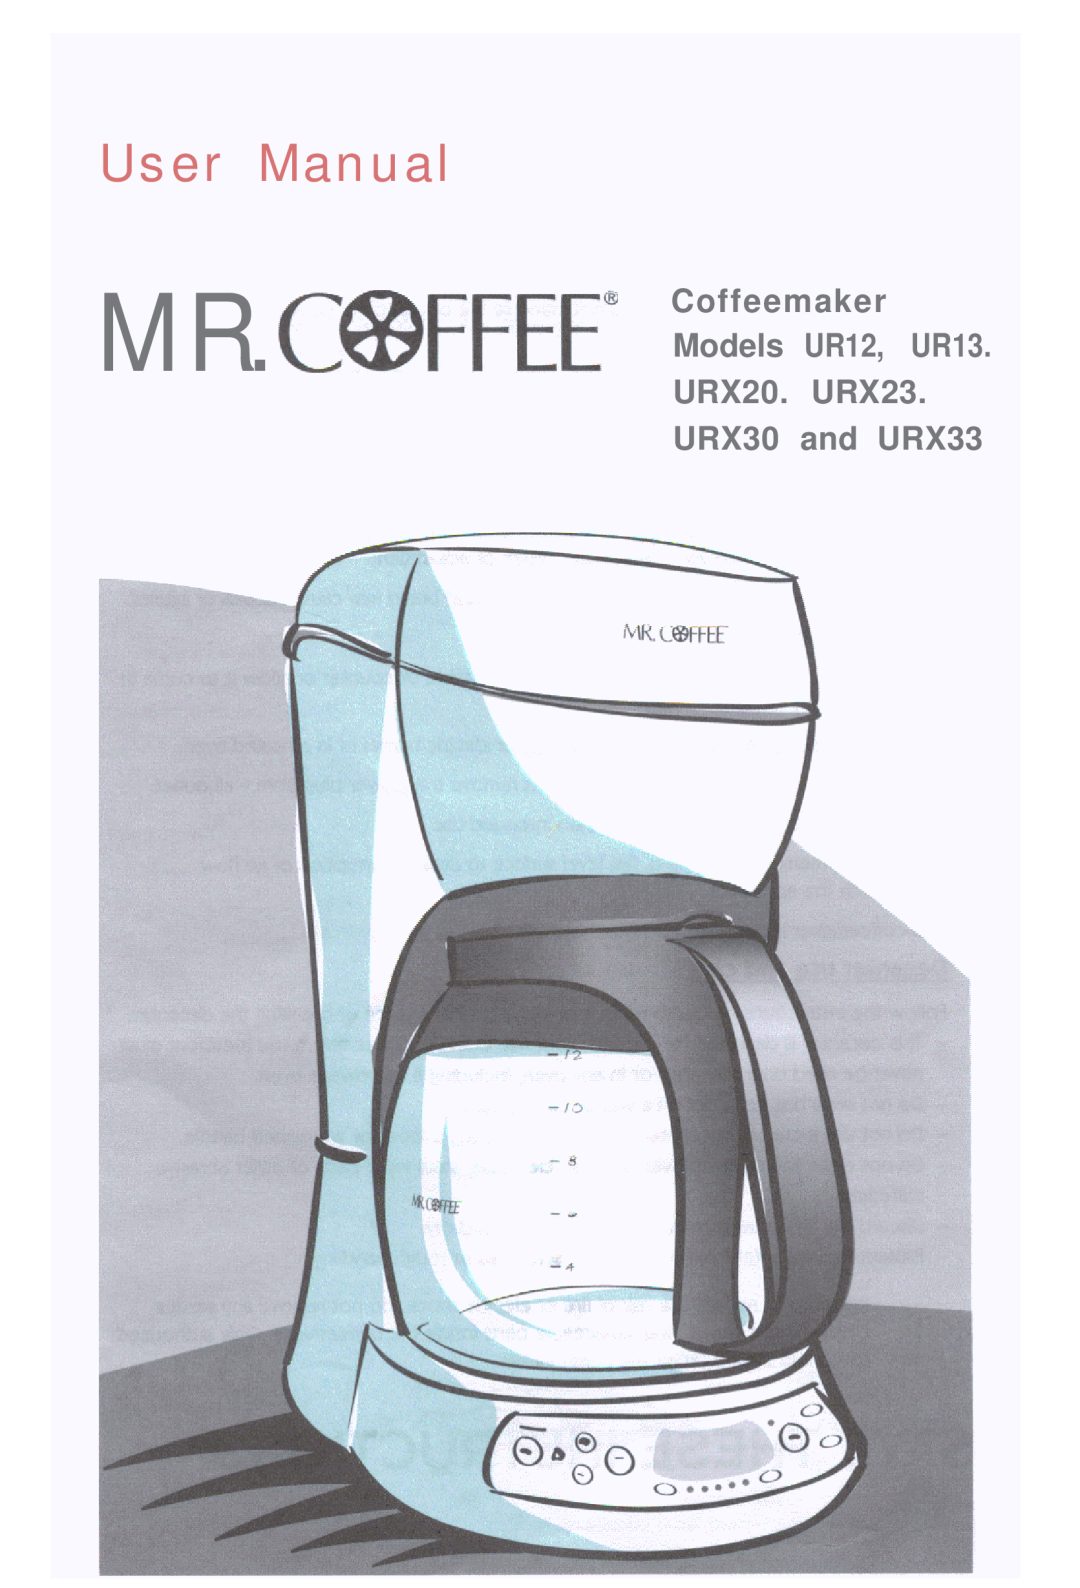 Mr. Coffee user manual MR.C@FFEEs, U s e r M a n u a l, Coffeemaker Models UR12, UR13 URX20. URX23, URX30 and URX33 